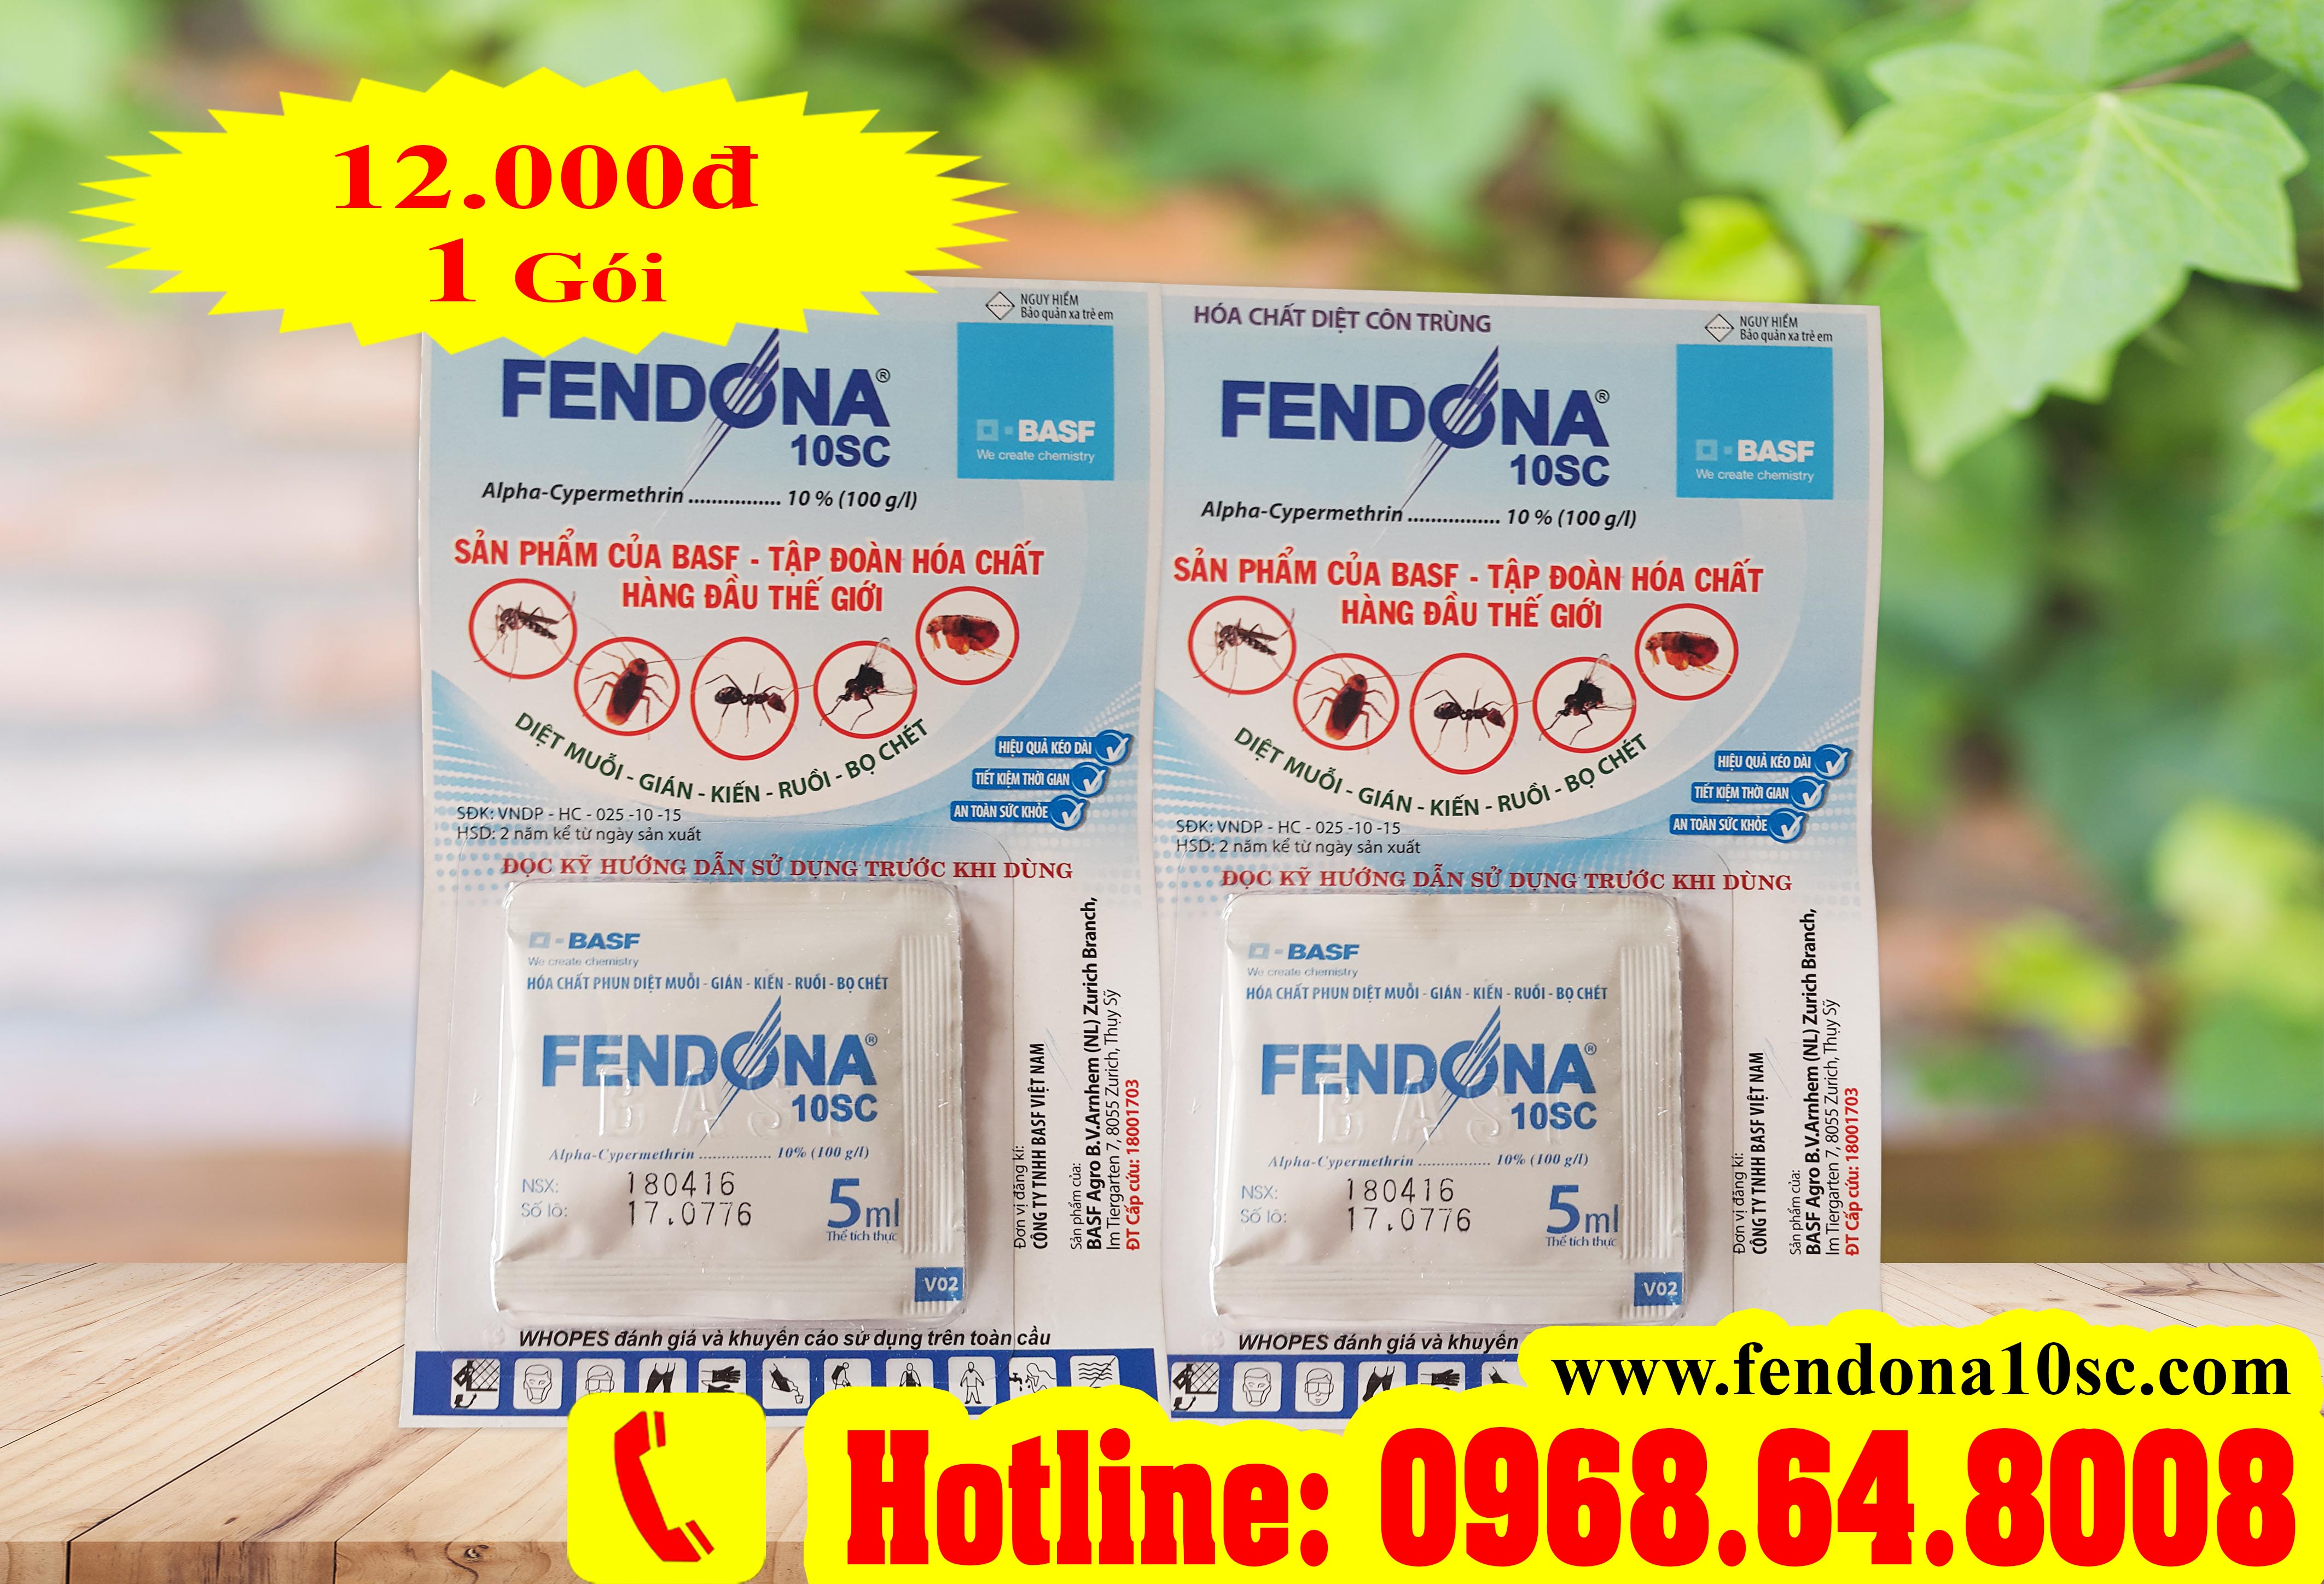 Fendona 10SC (5ml) - (BASF - THỤY SỸ) - Thuốc diệt côn trùng, muỗi, gián, ruồi, kiến, bọ chét...